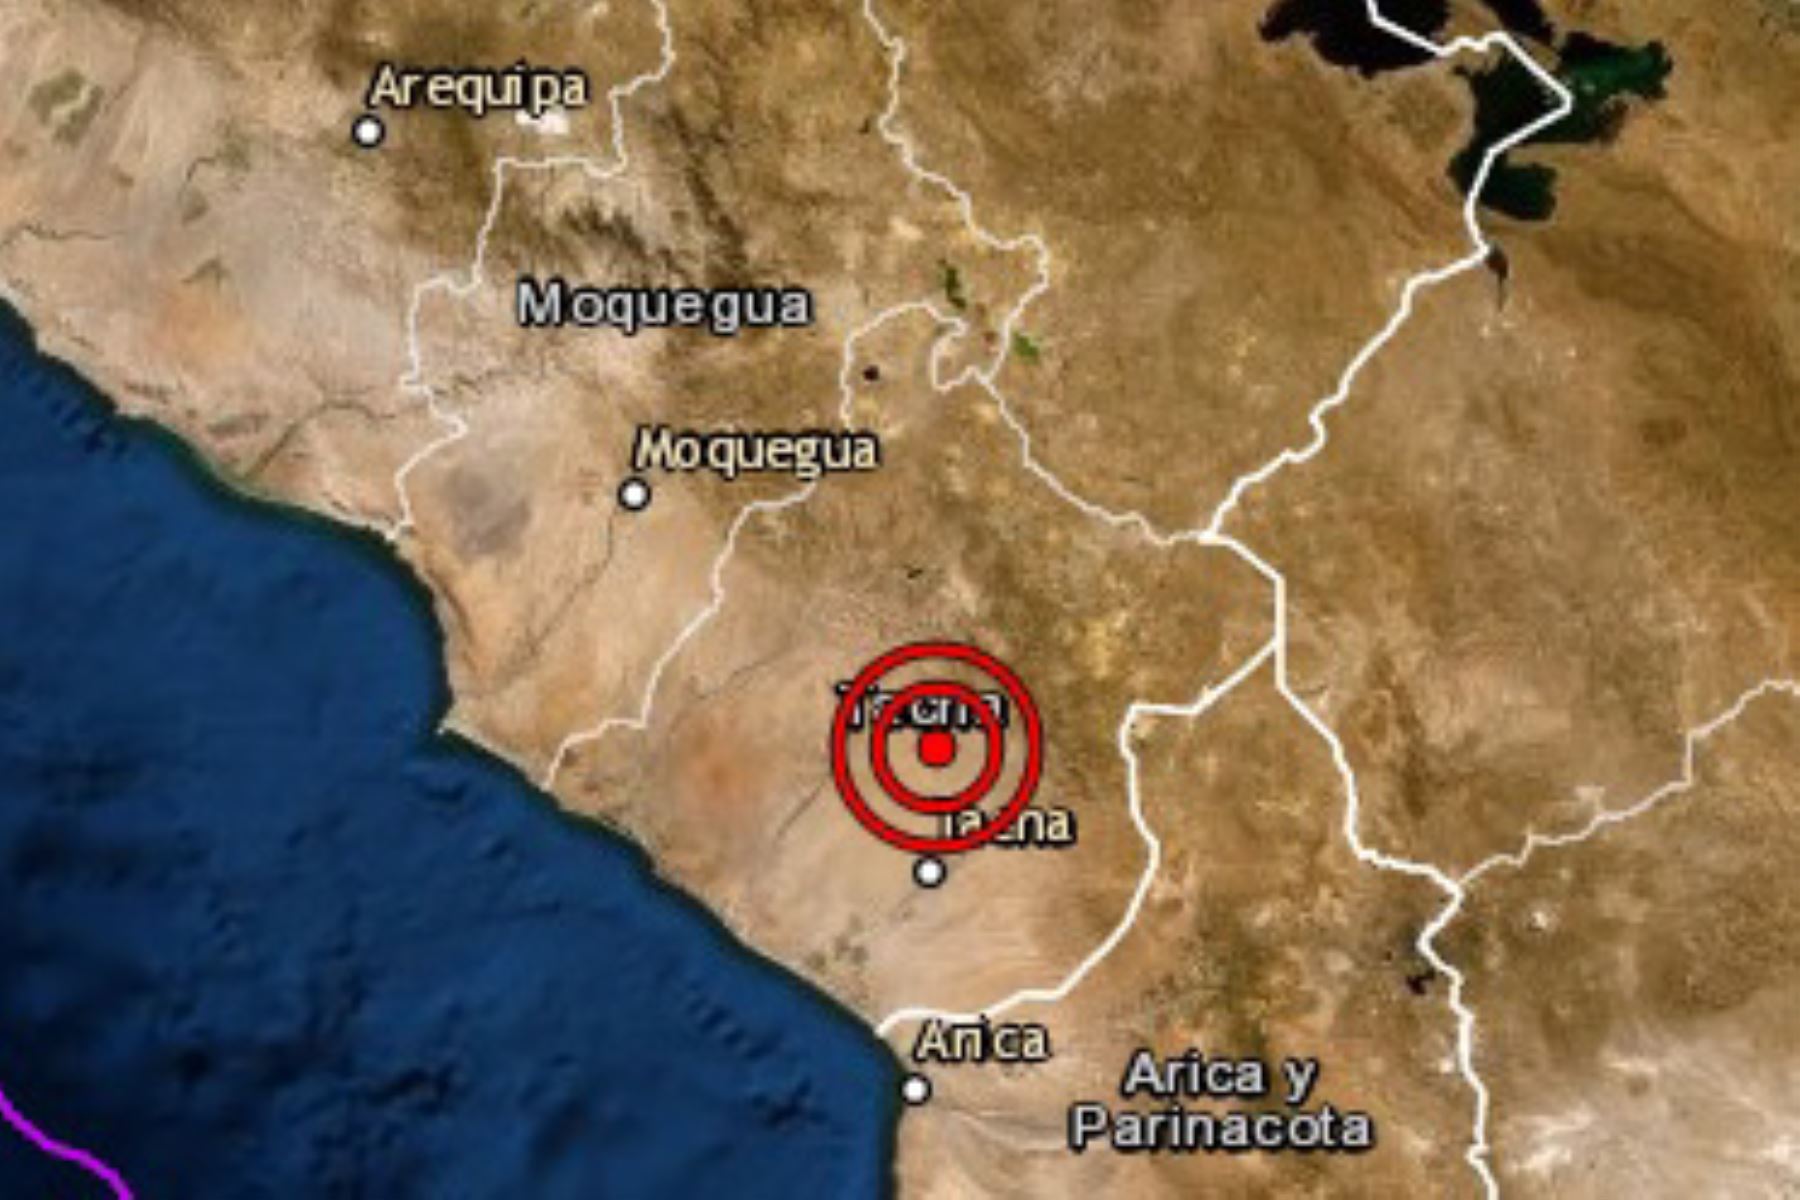 Tacna registró hoy un sismo de magnitud 4 esta mañana, informó el Instituto Geofísico del Perú (IGP).